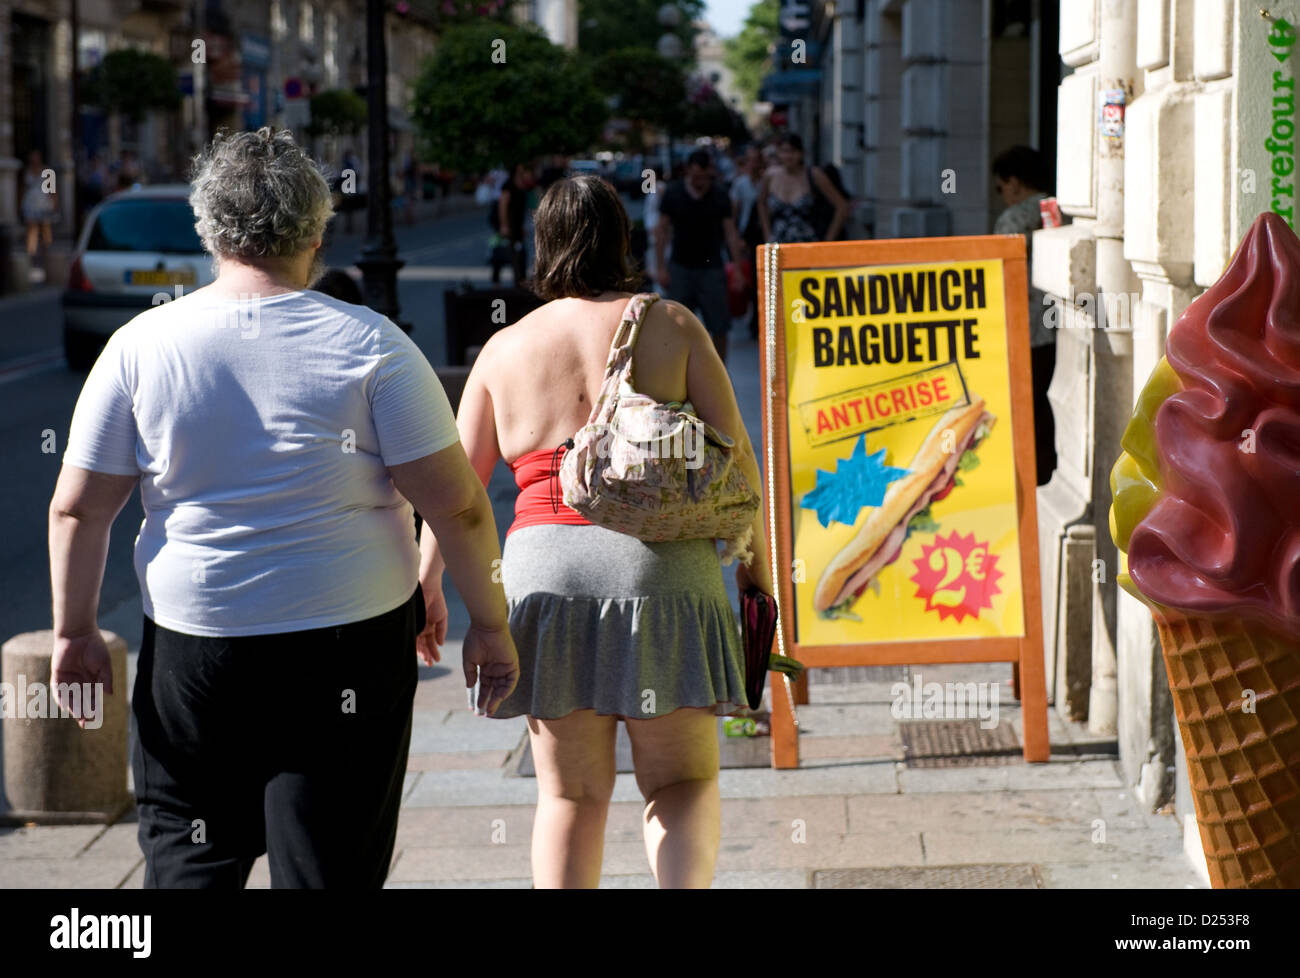 Avignon, Frankreich, ein stout paar läuft vorbei an Eis und Sandwich-Werbung Stockfoto